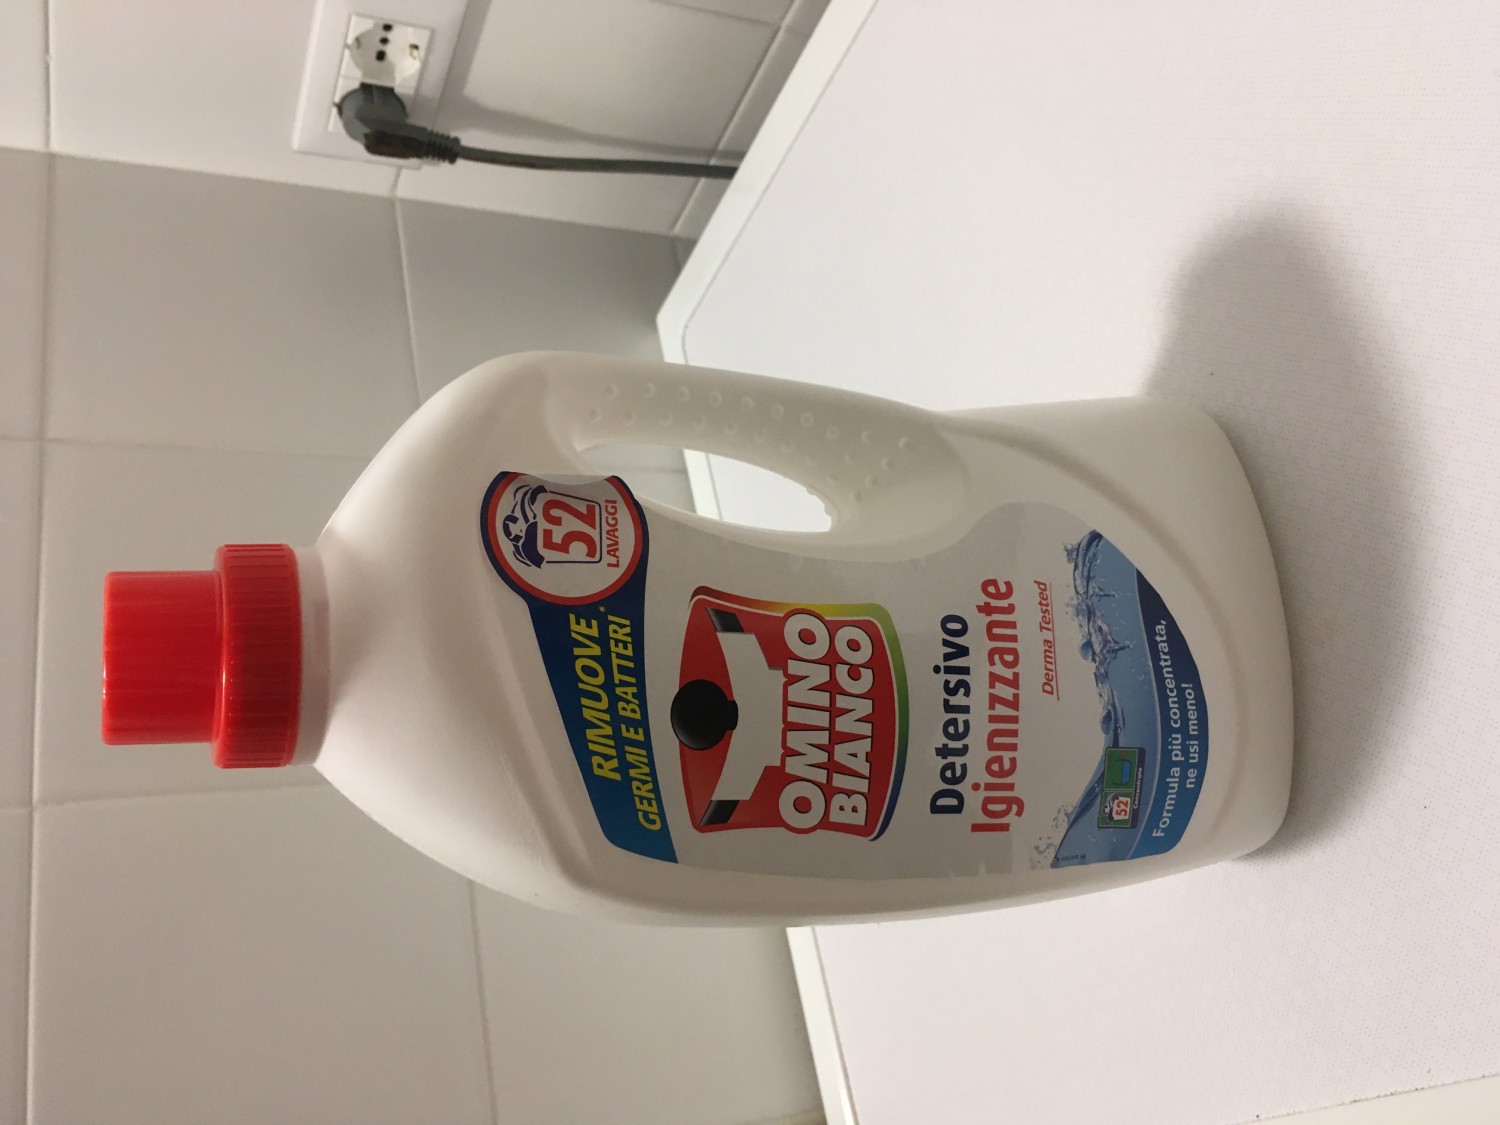 Omino Bianco Additivo Igienizzante Liquido - MammacheTest